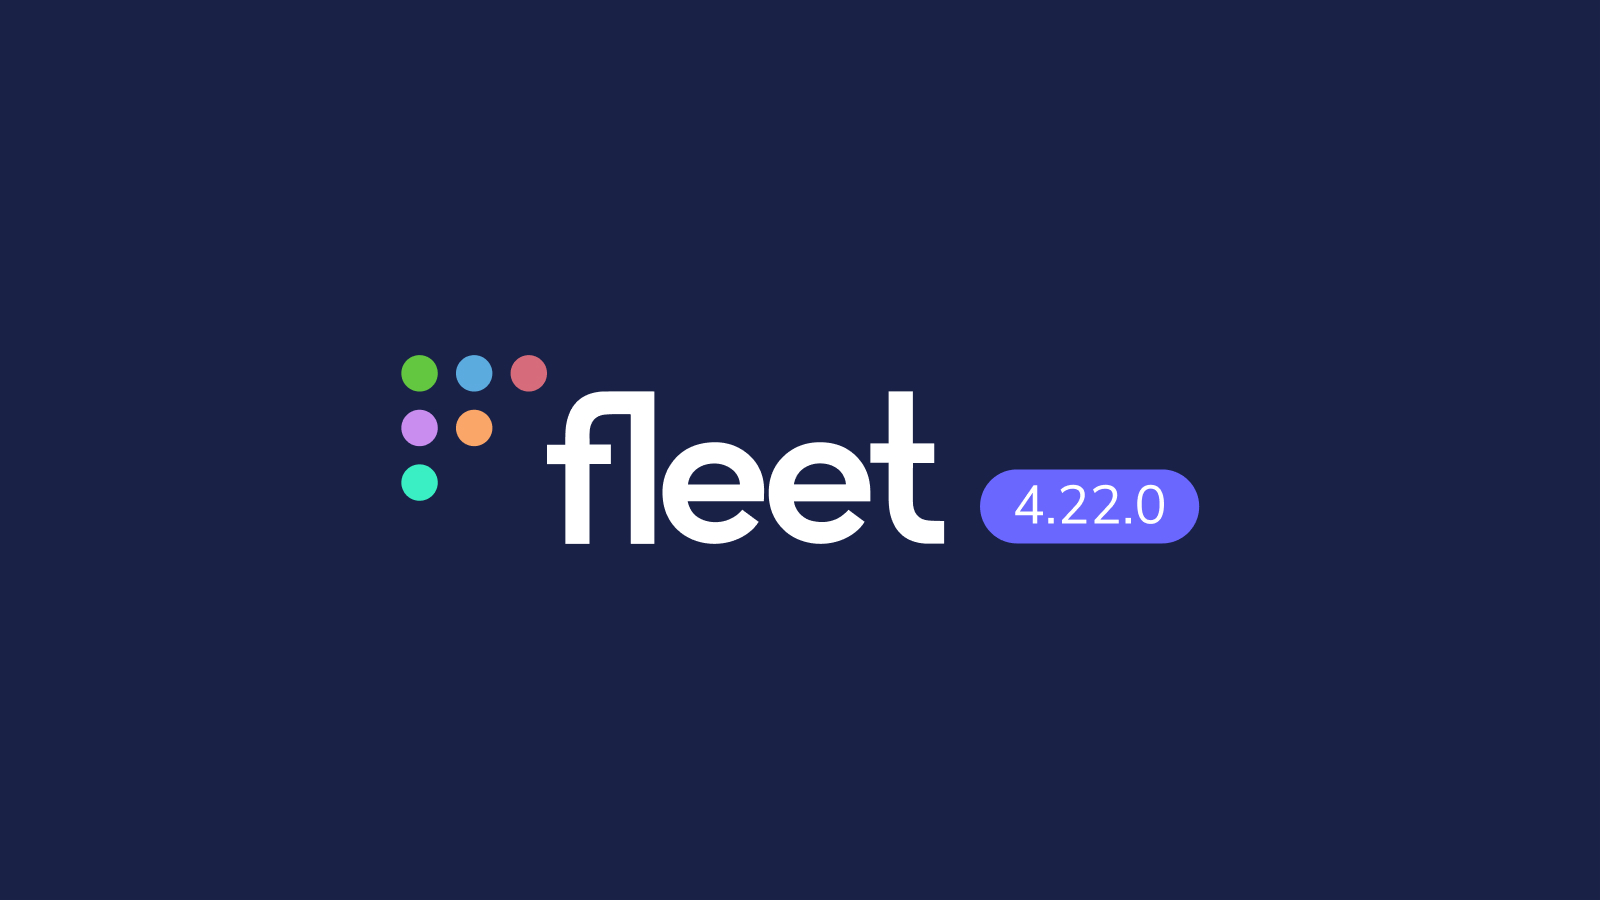 Fleet 4.22.0